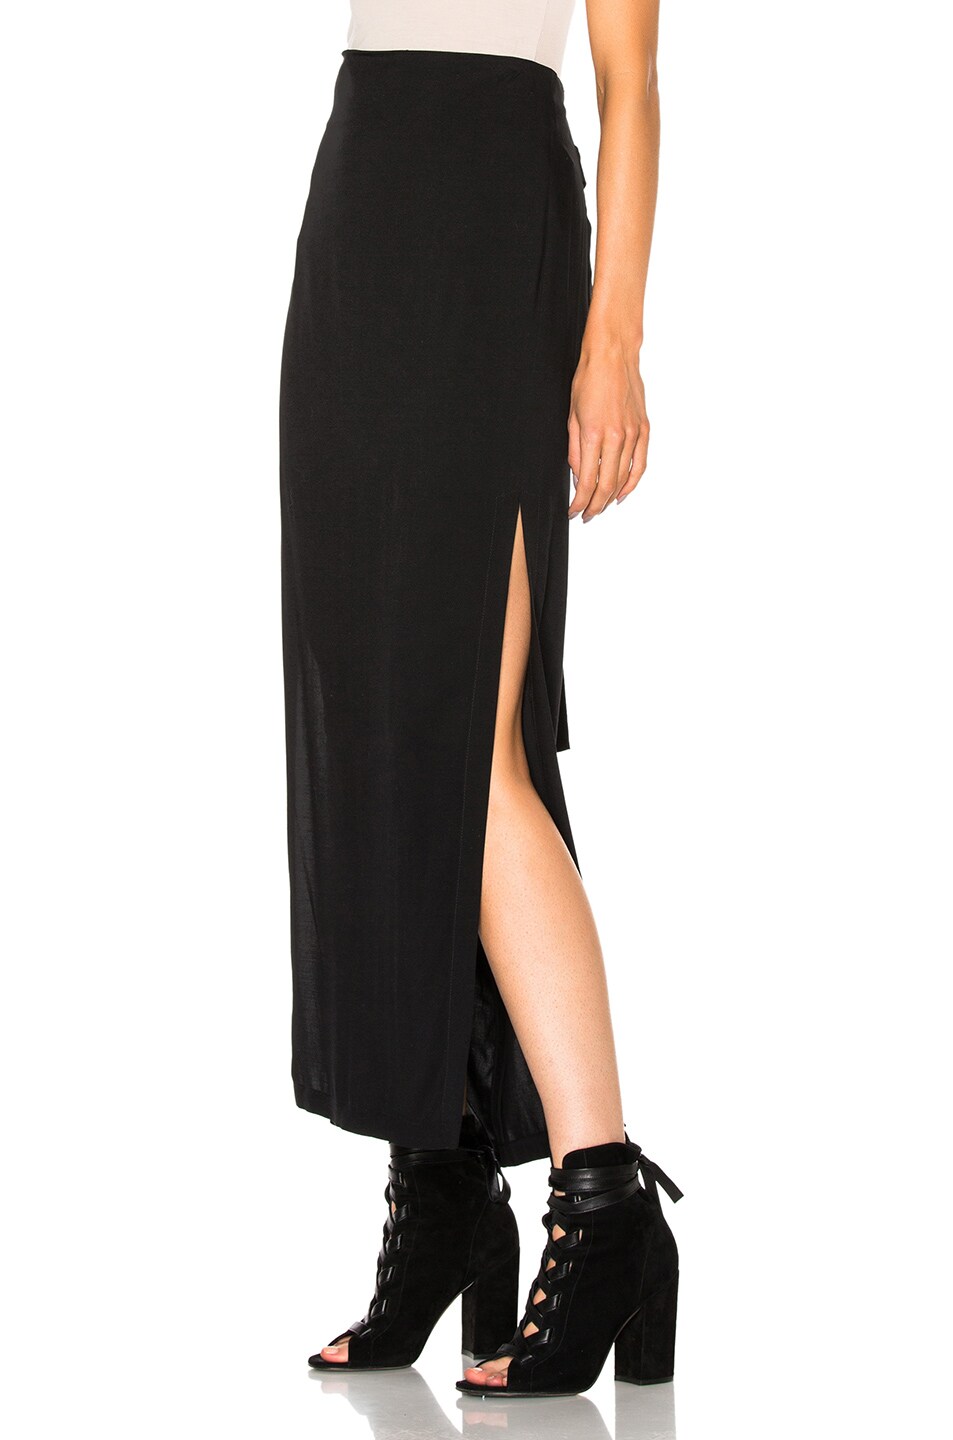 ANN DEMEULEMEESTER Belted Column Skirt in Black | ModeSens